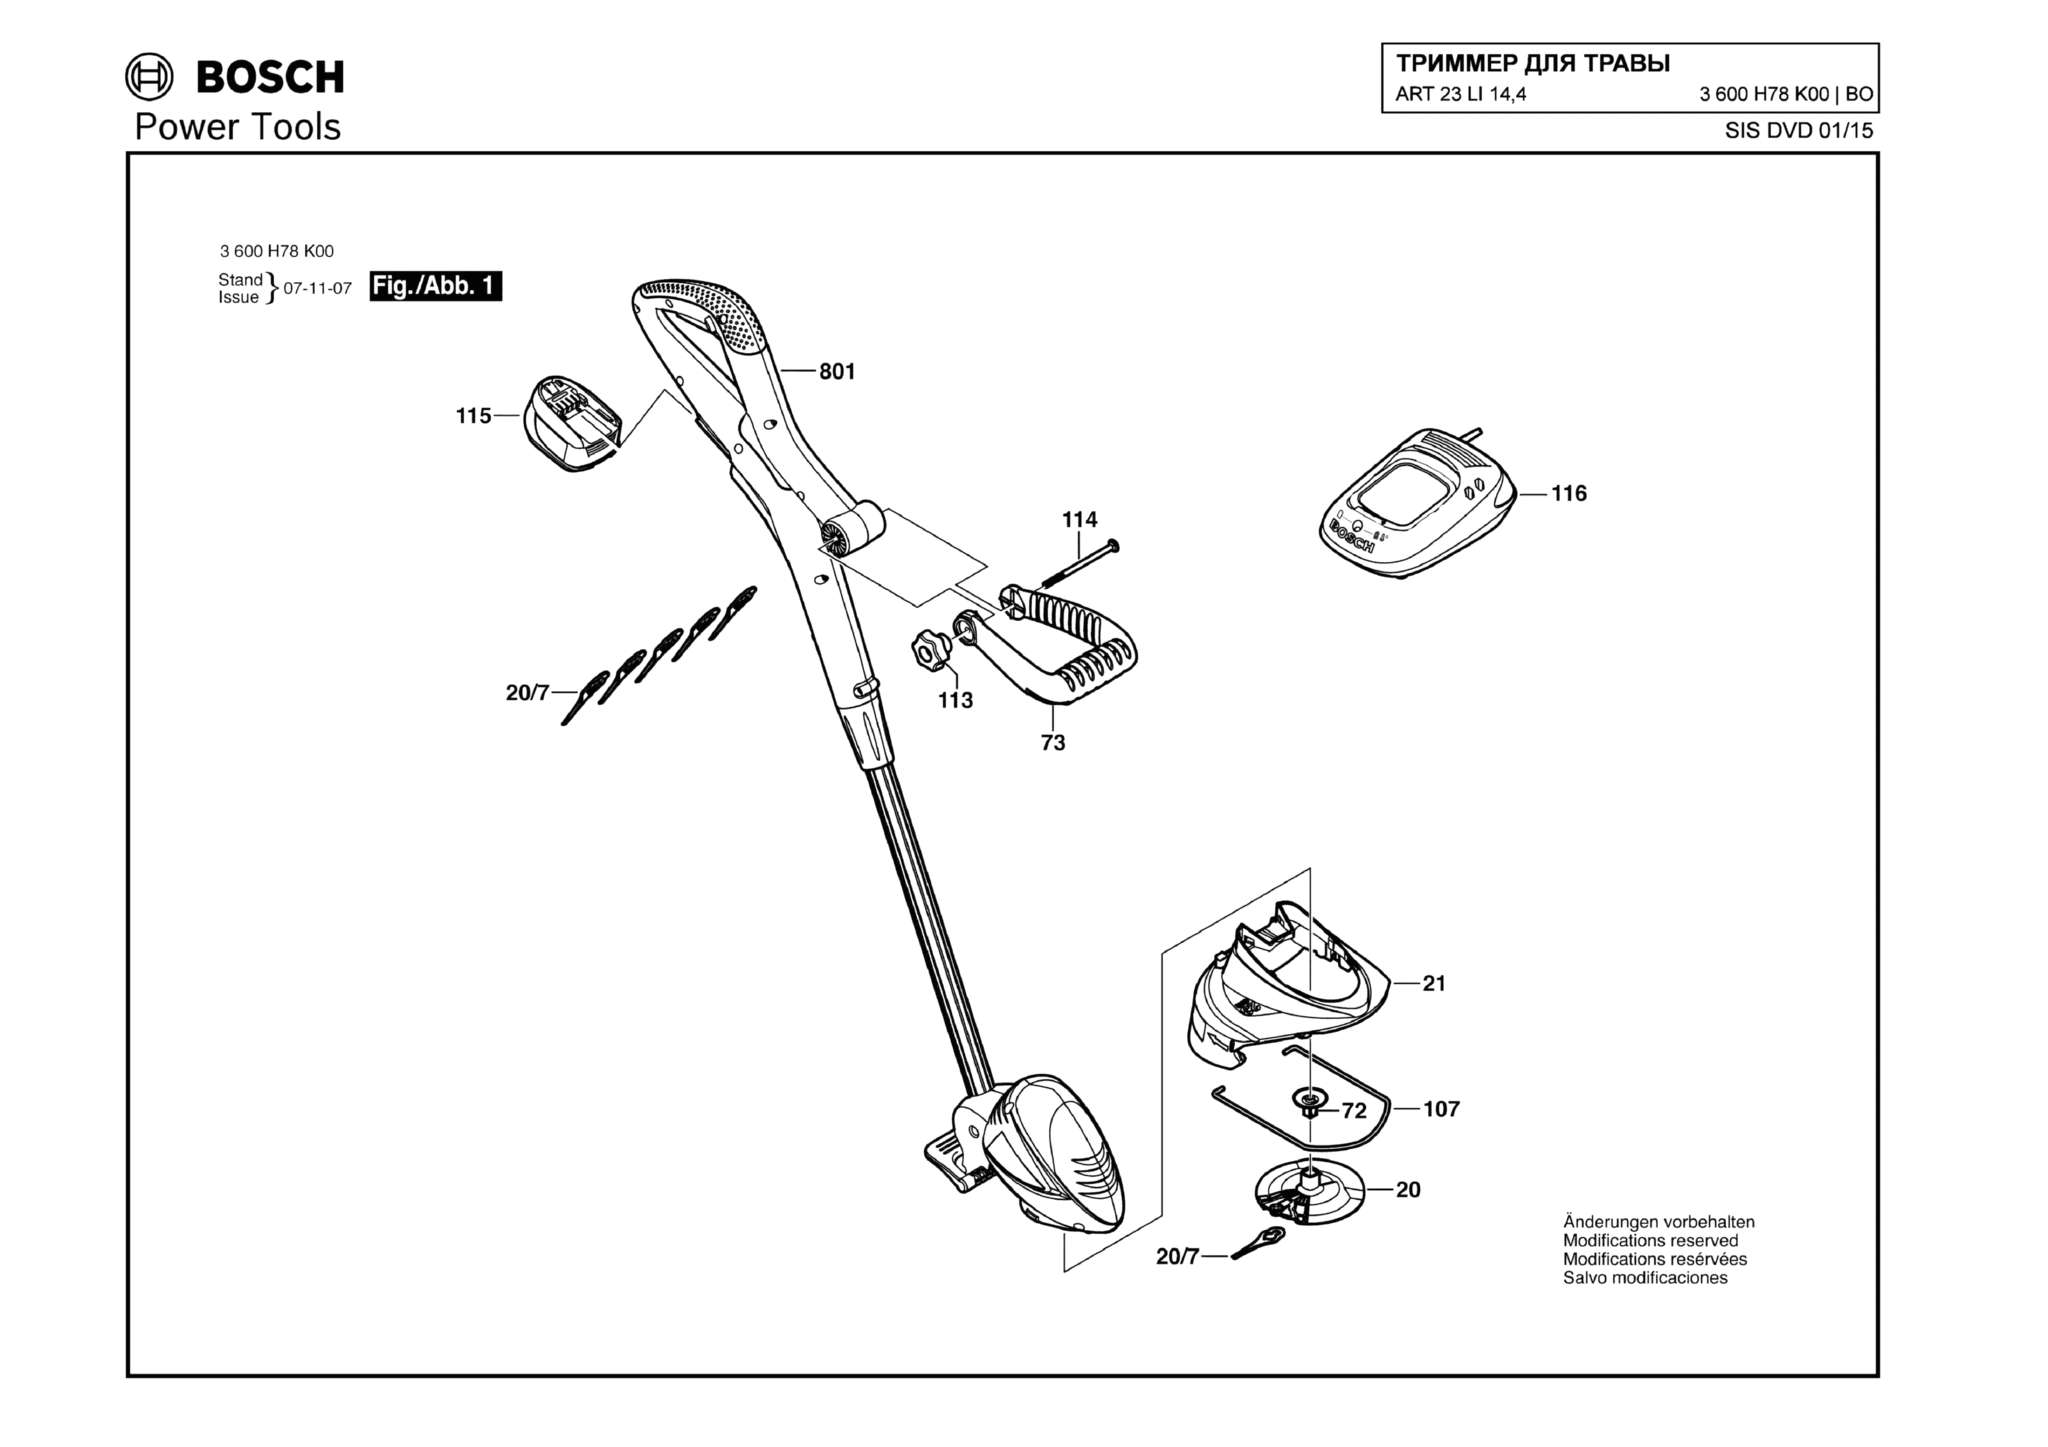 Запчасти, схема и деталировка Bosch ART 23 LI 14,4 (ТИП 3600H78K00)